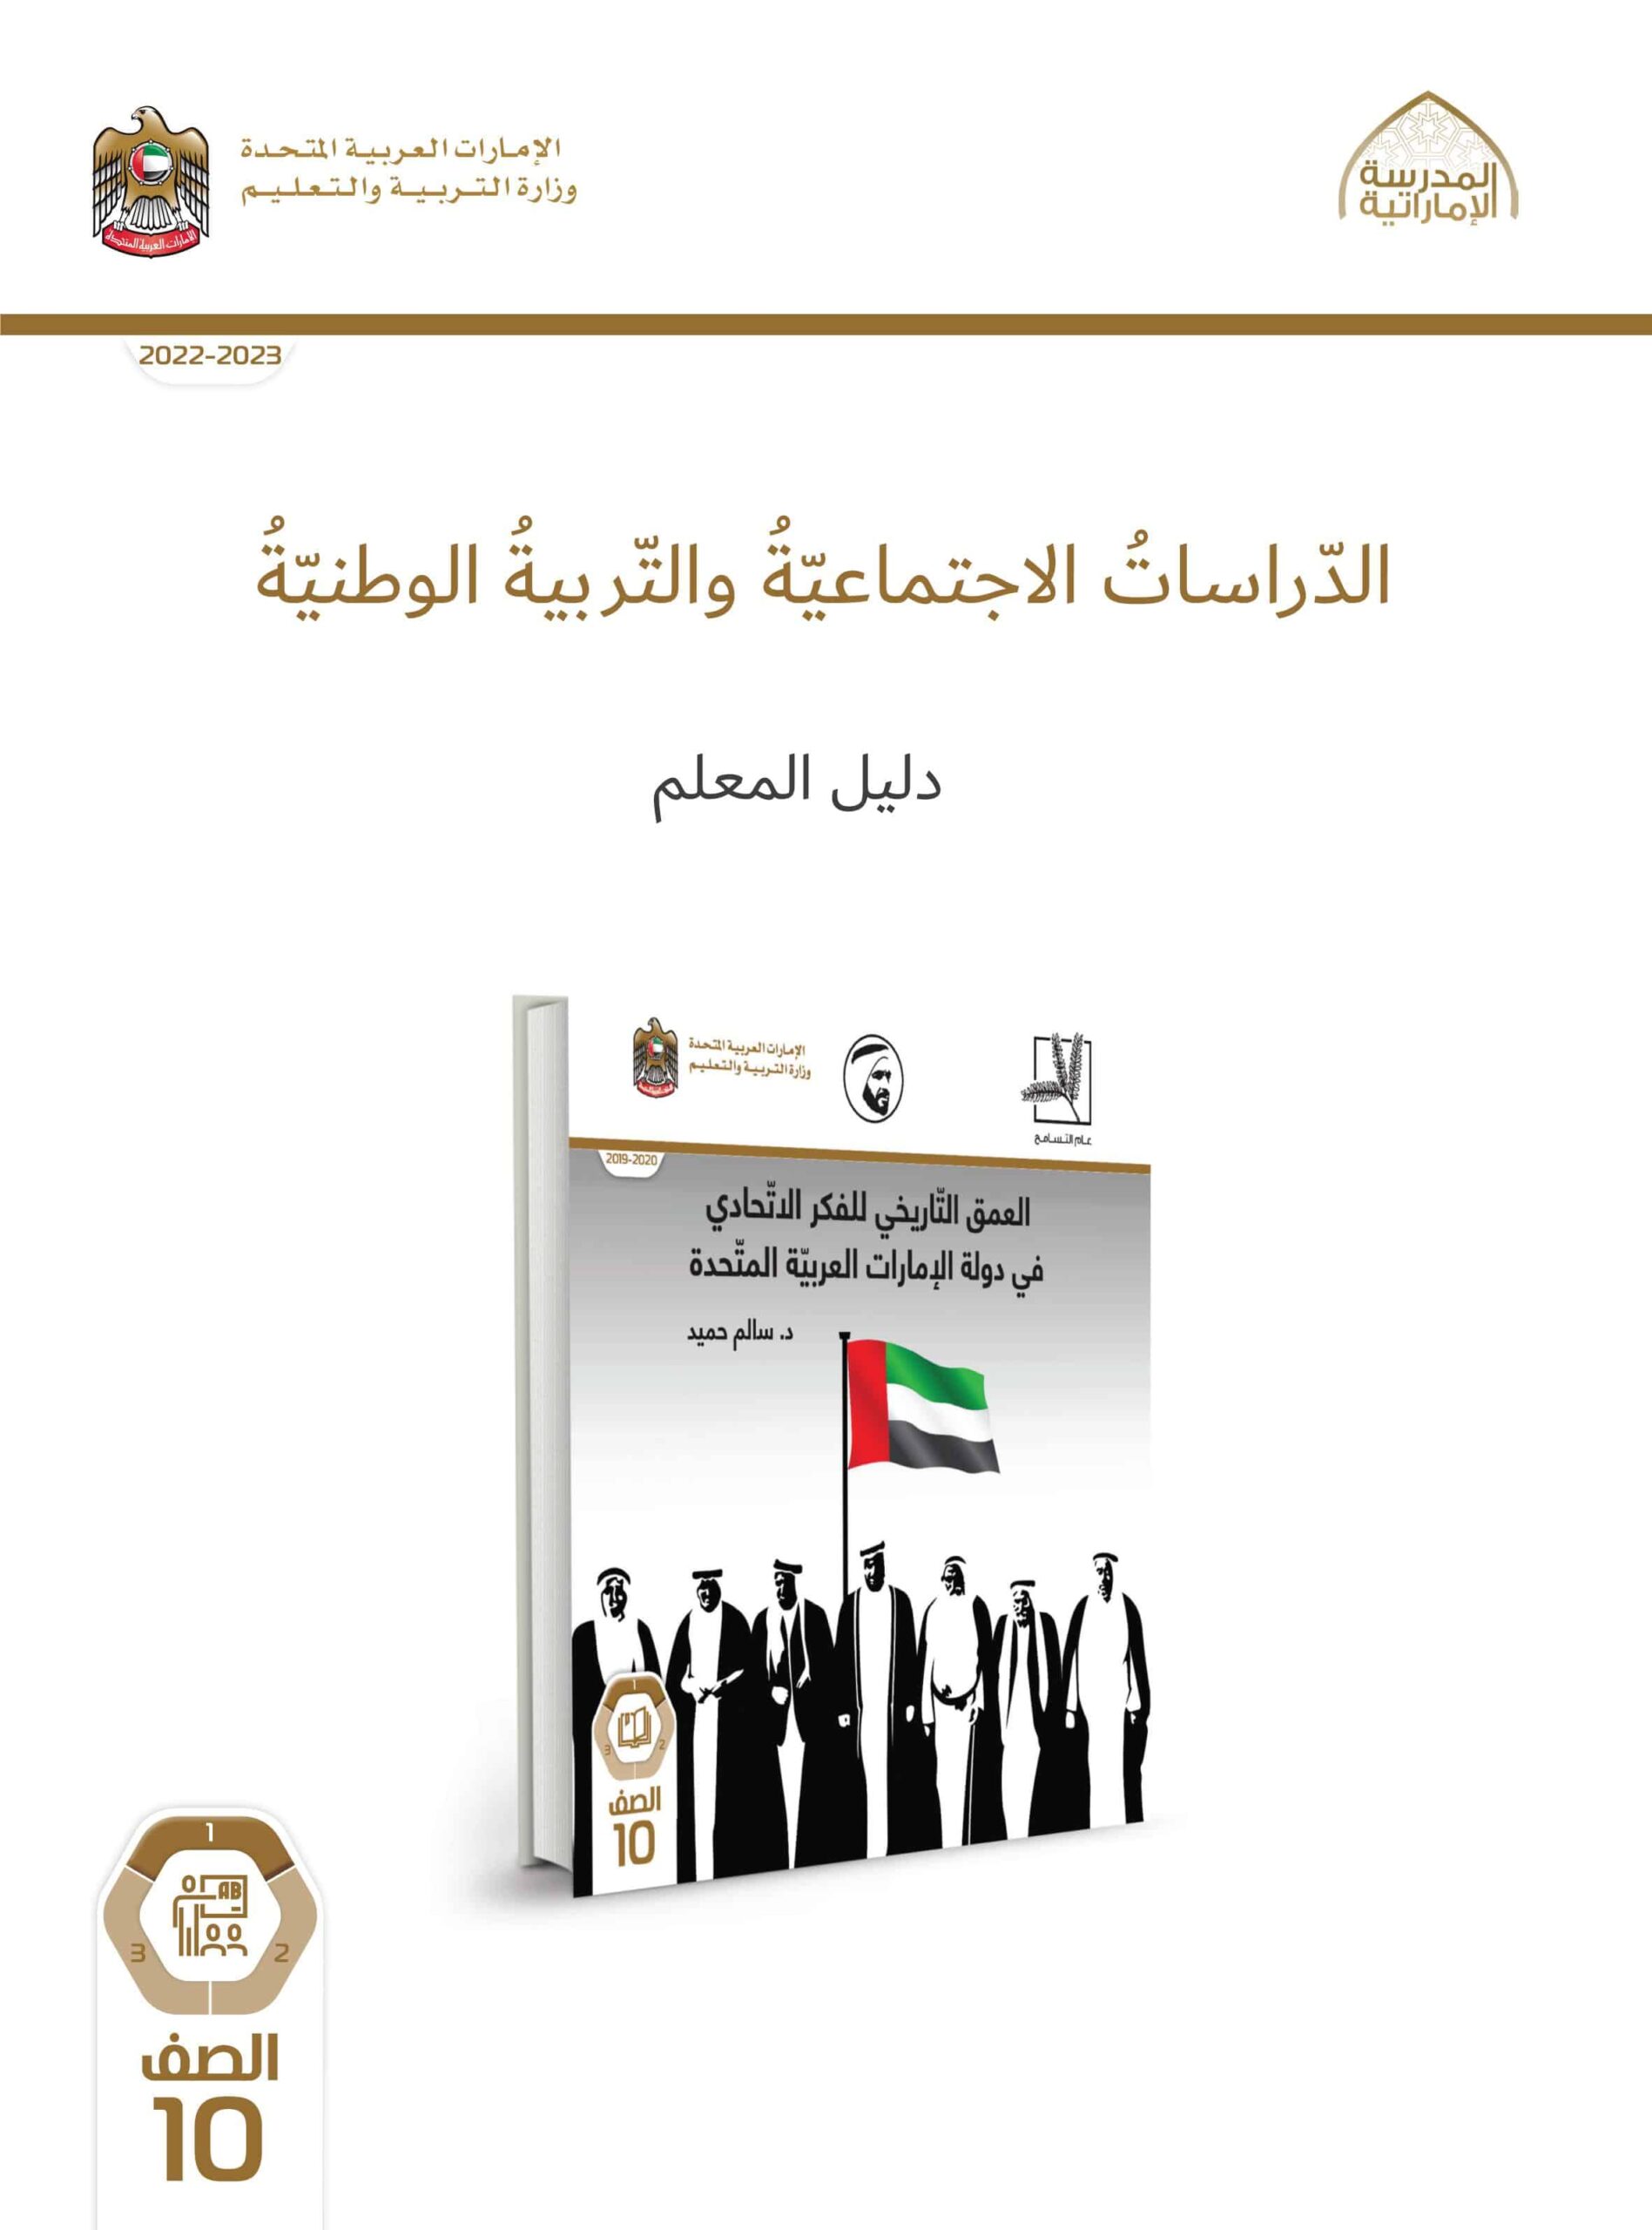 كتاب دليل المعلم العمق التاريخي للفكر الاتحادي في دولة الإمارات الدراسات الإجتماعية والتربية الوطنية الصف العاشر الفصل الدراسي الأول 2022-2023